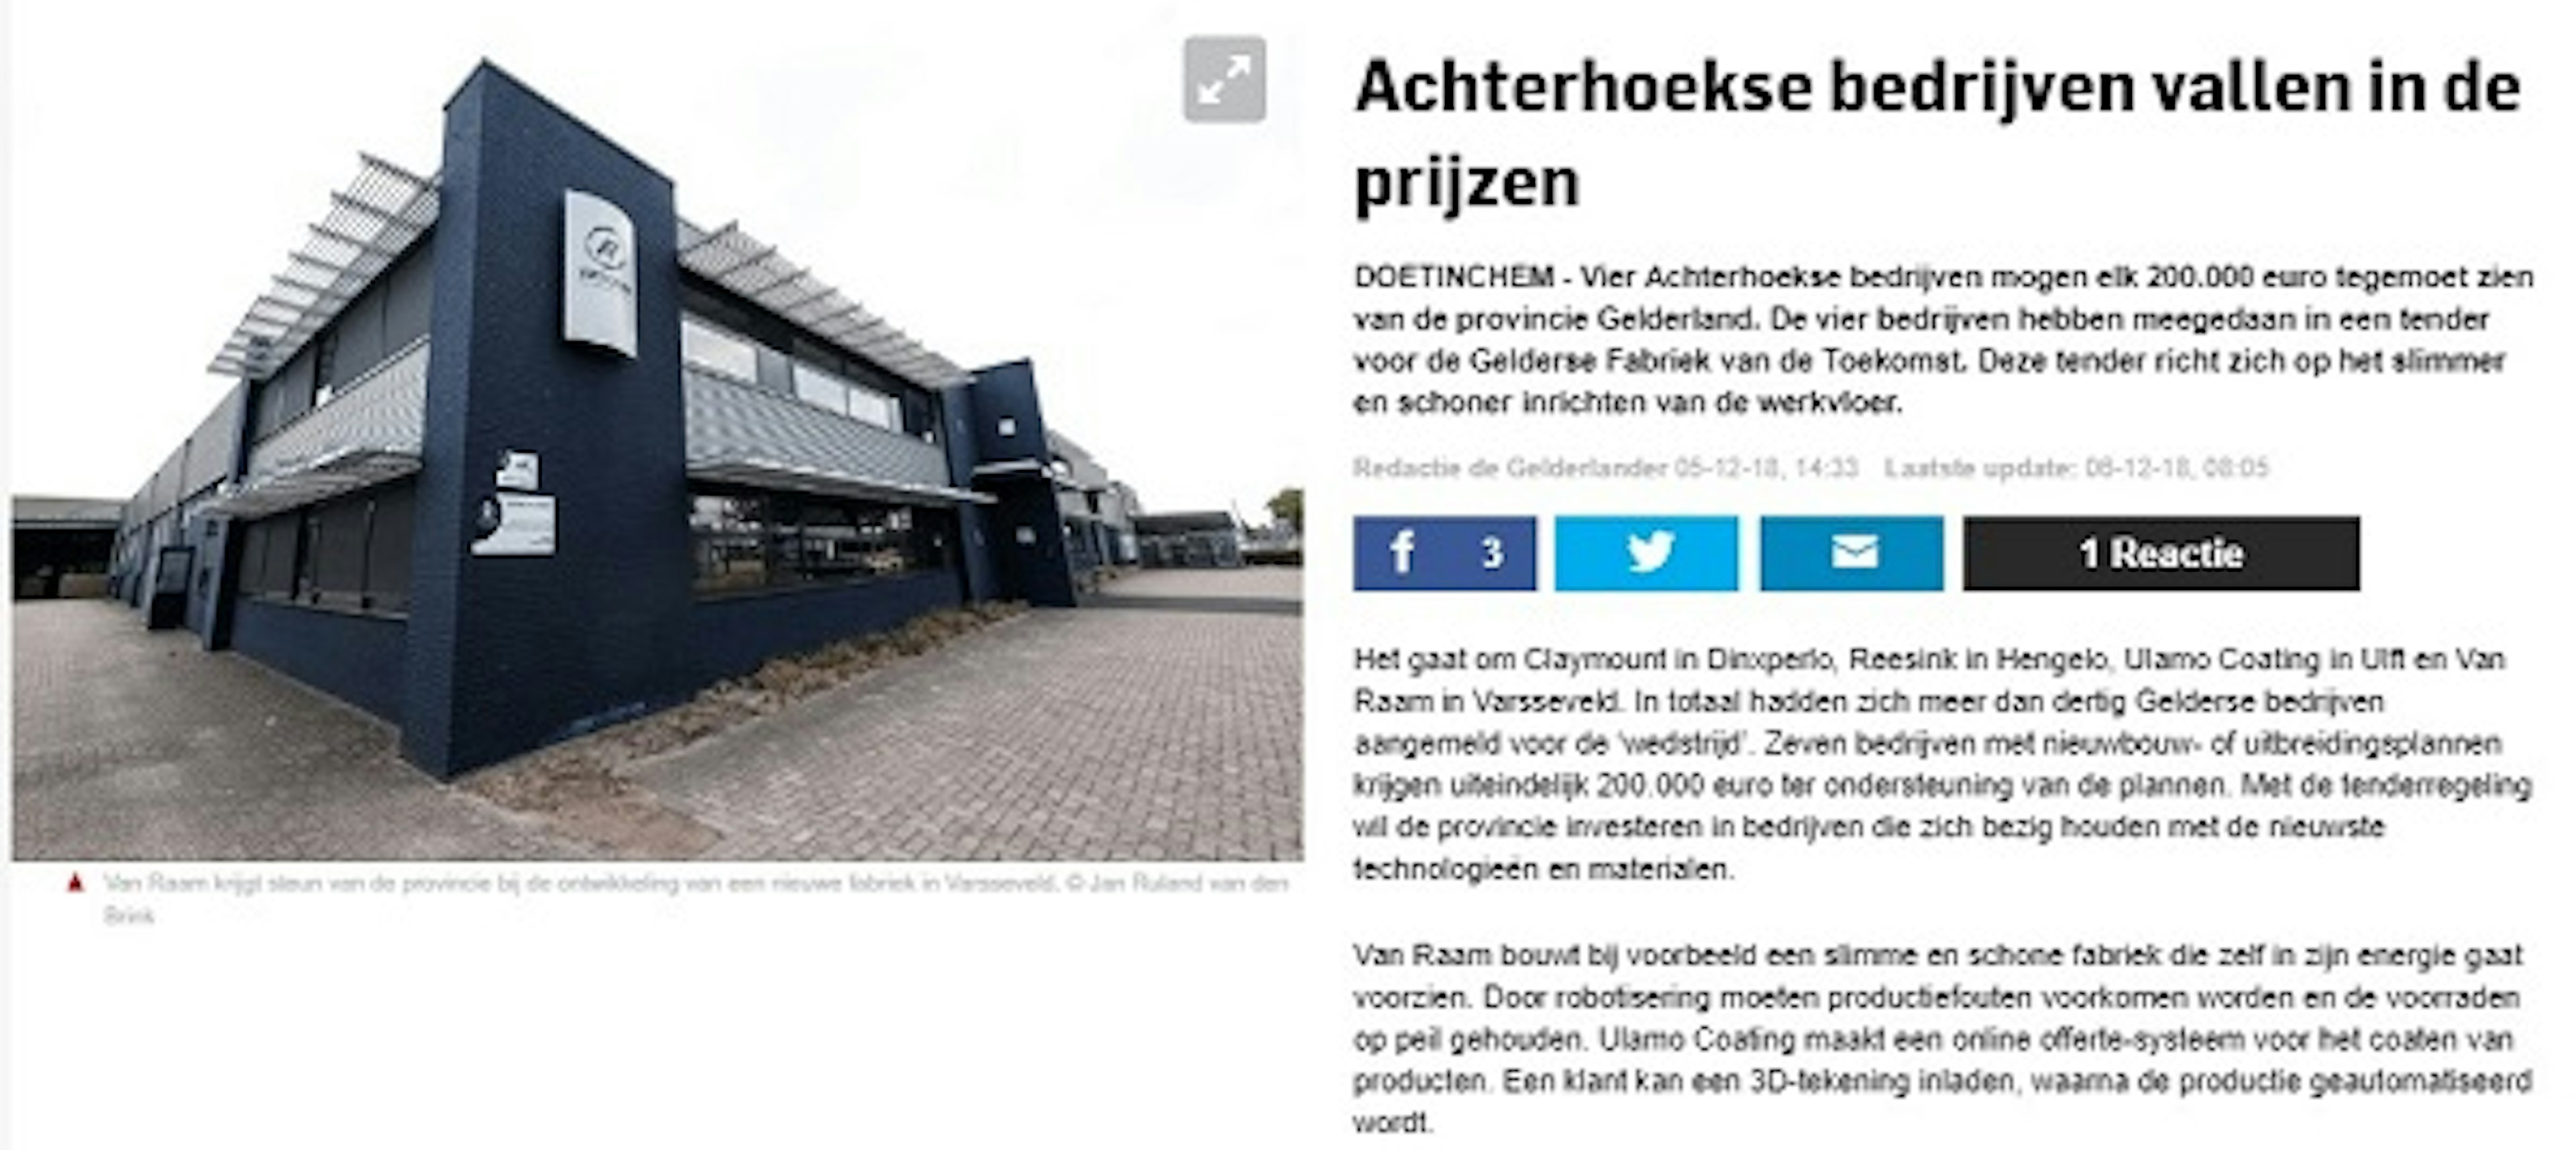 Achterhoekse bedrijven ontvangen subsidie van provicie Gelderland